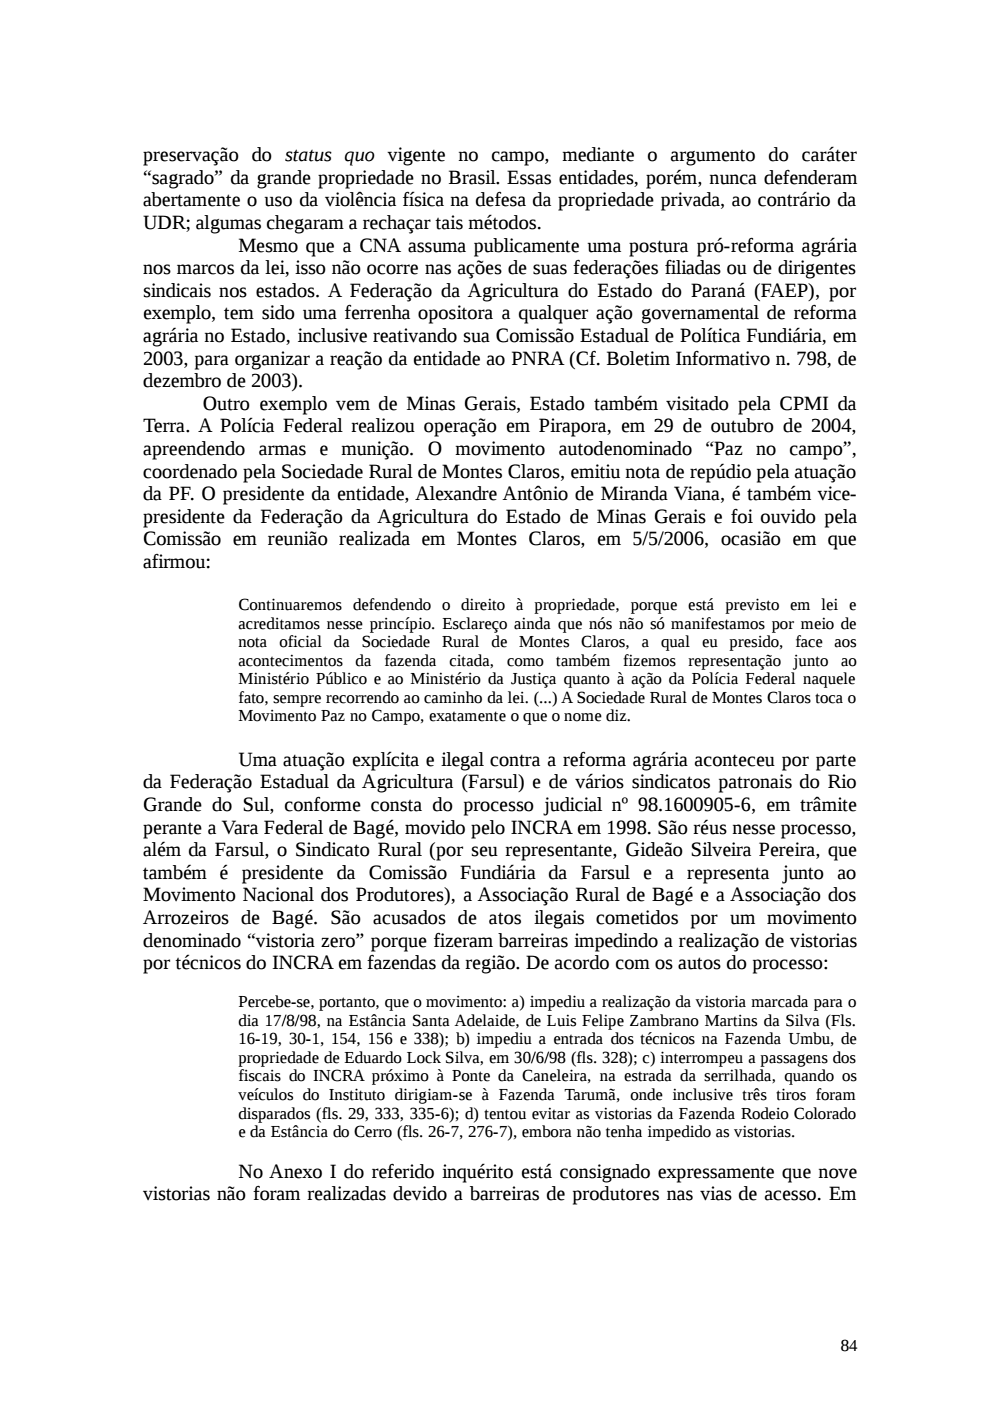 Page 84 from Relatório final da comissão